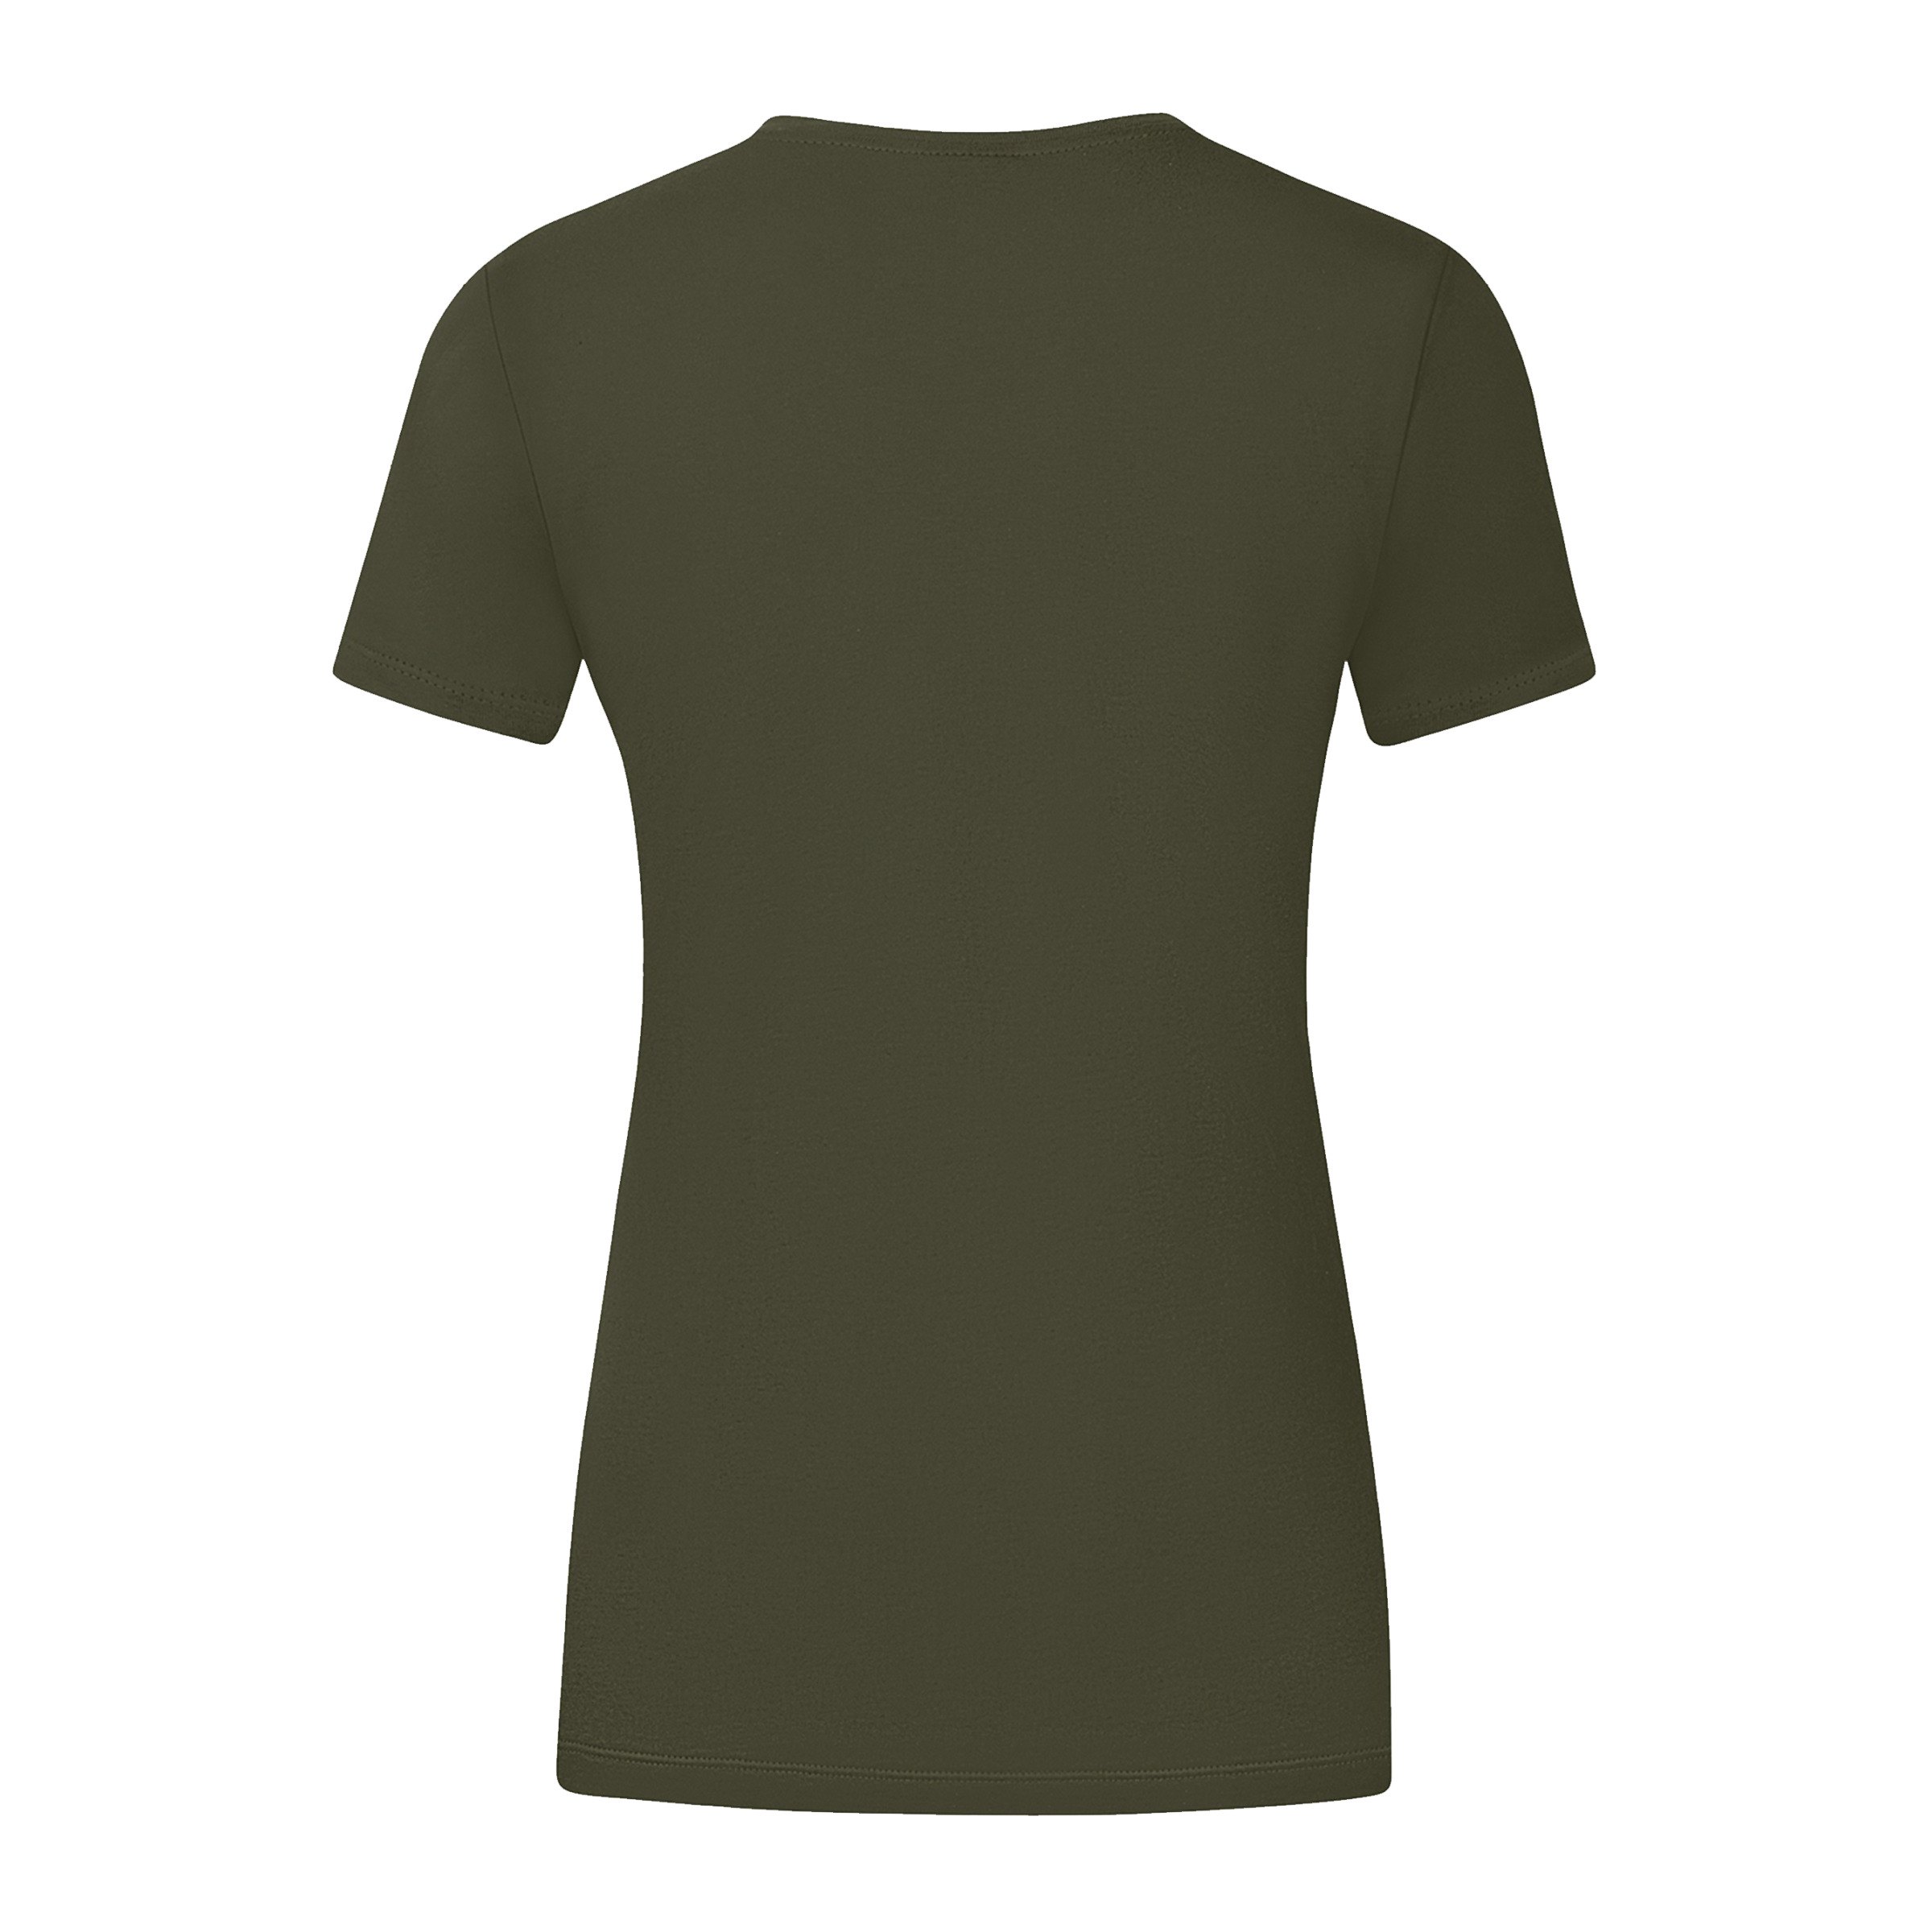 JAKO Promo T-Shirt Damen Khaki F231 Grün khaki